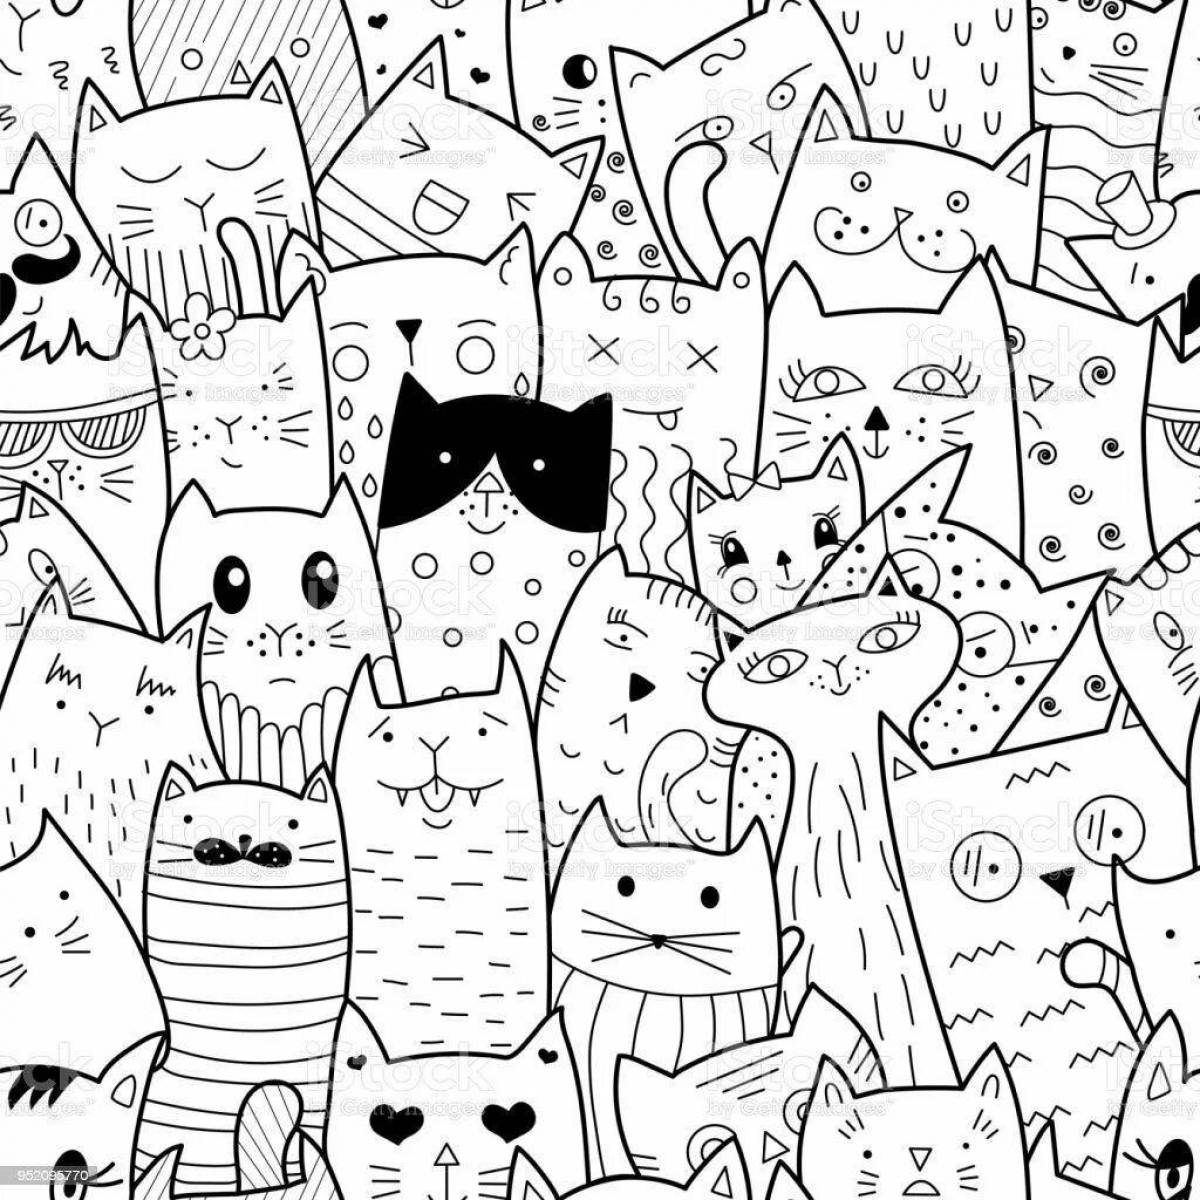 Игривая страница раскраски «много кошек»